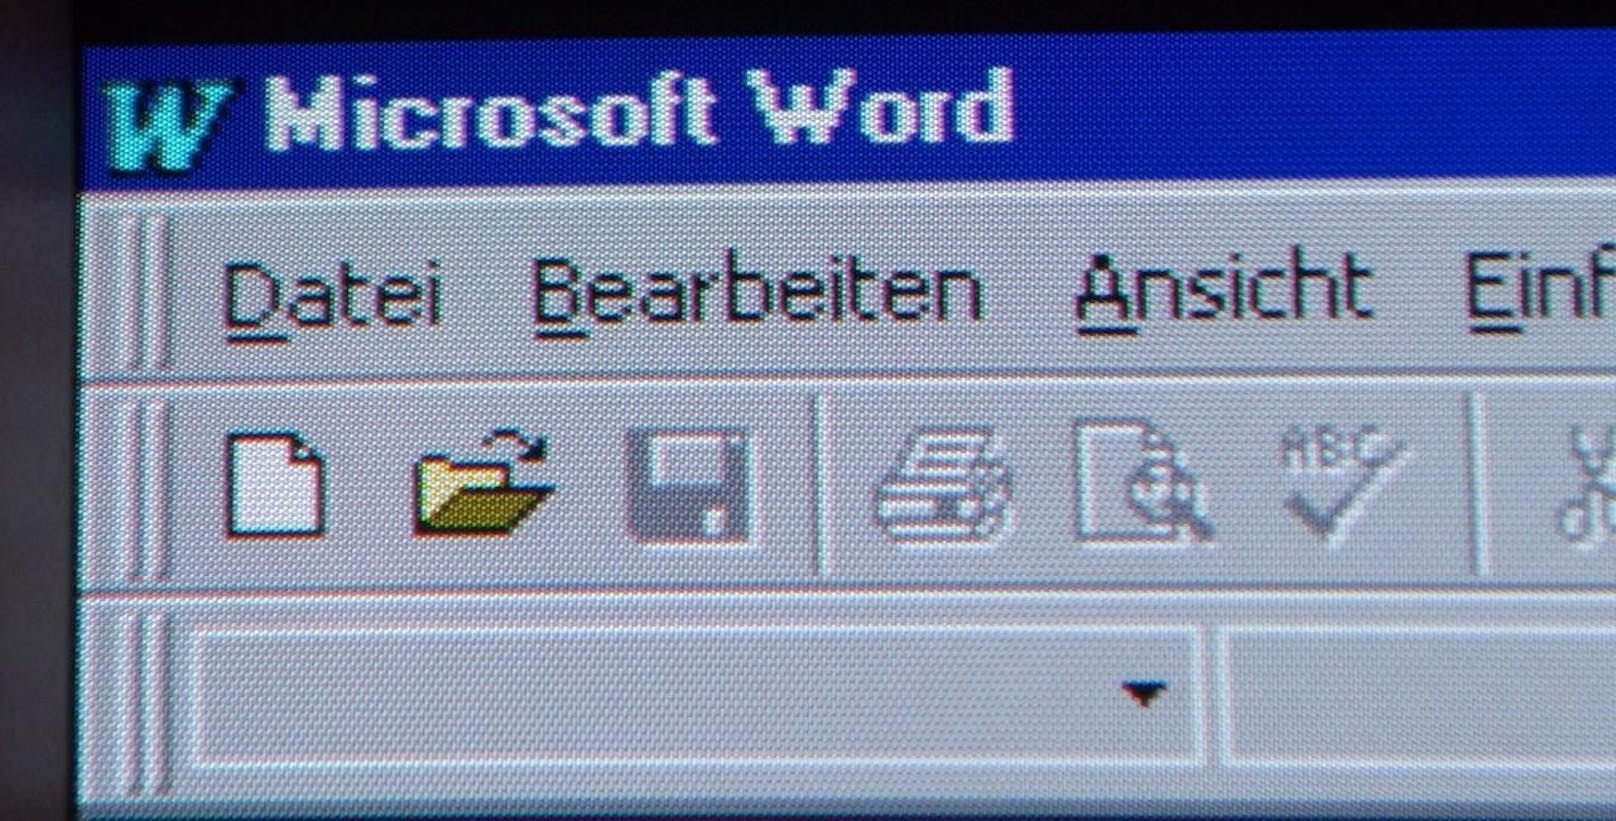 Microsoft Word gehört zu den verbreitetsten Textverarbeitungsprogrammen. 